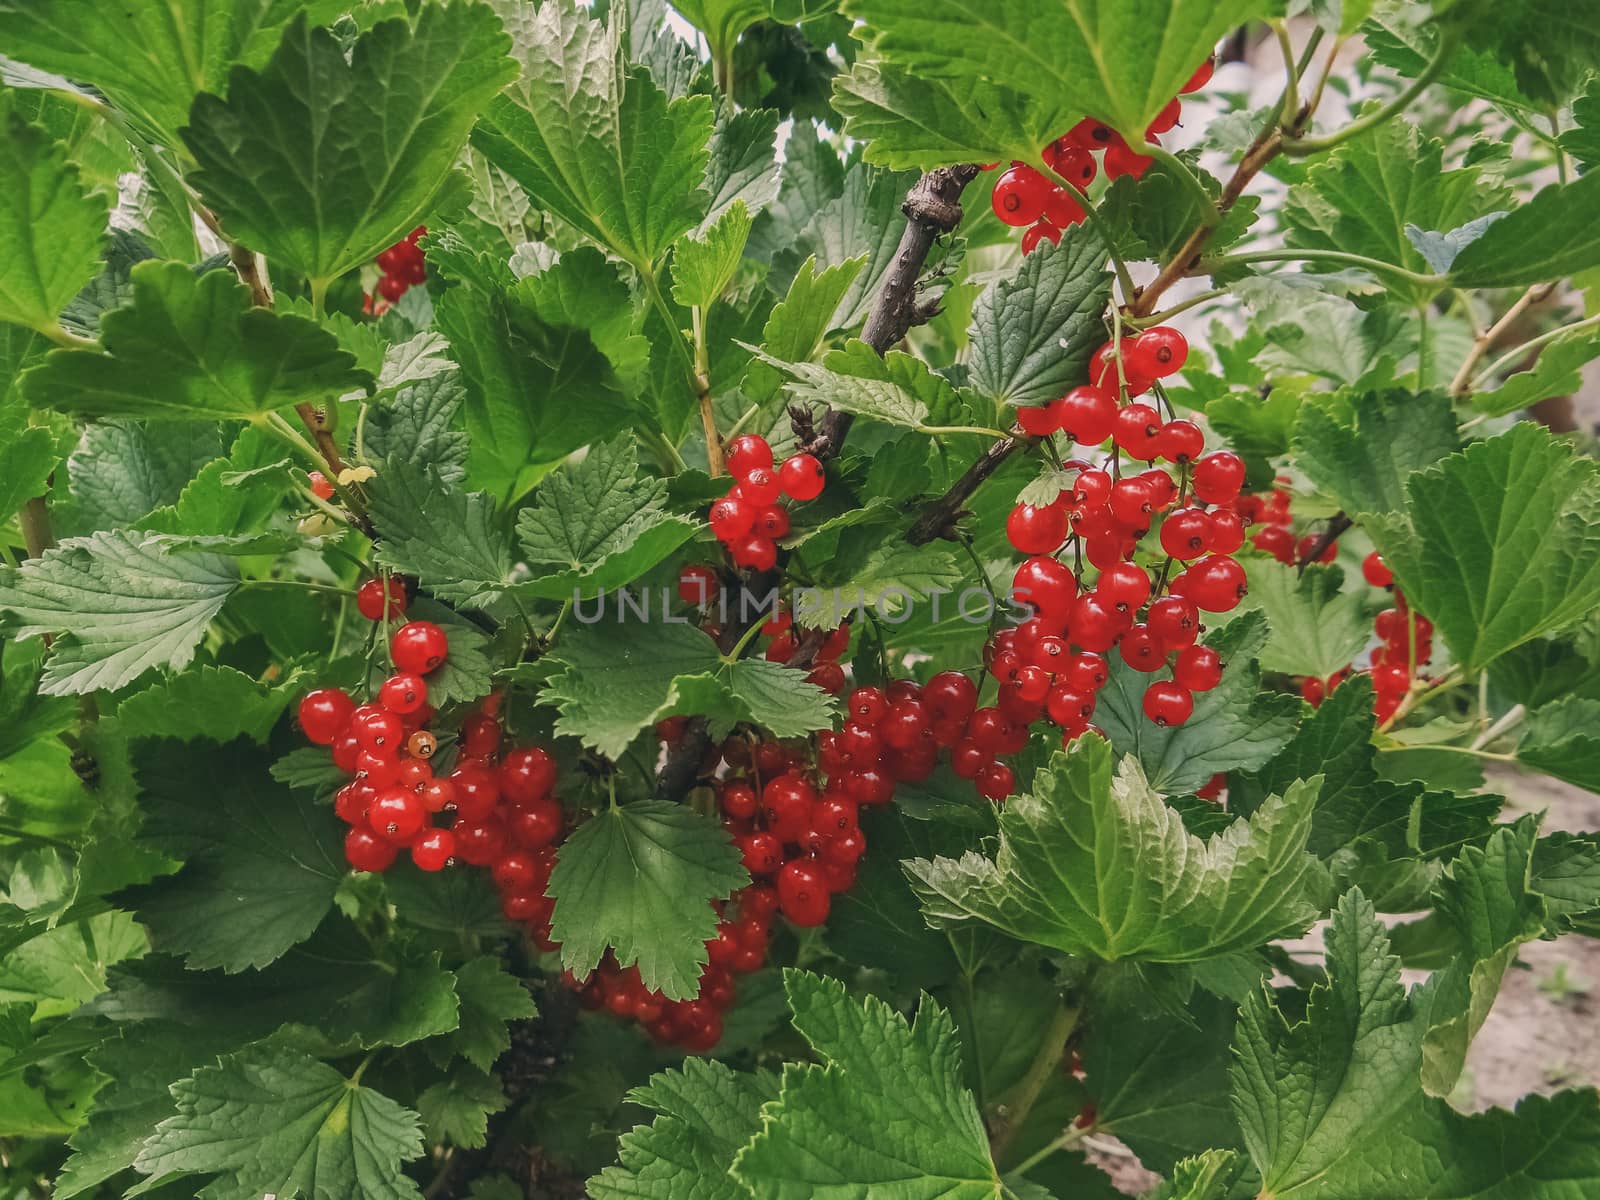 Bush of red currant berries in a garden. by natazhekova